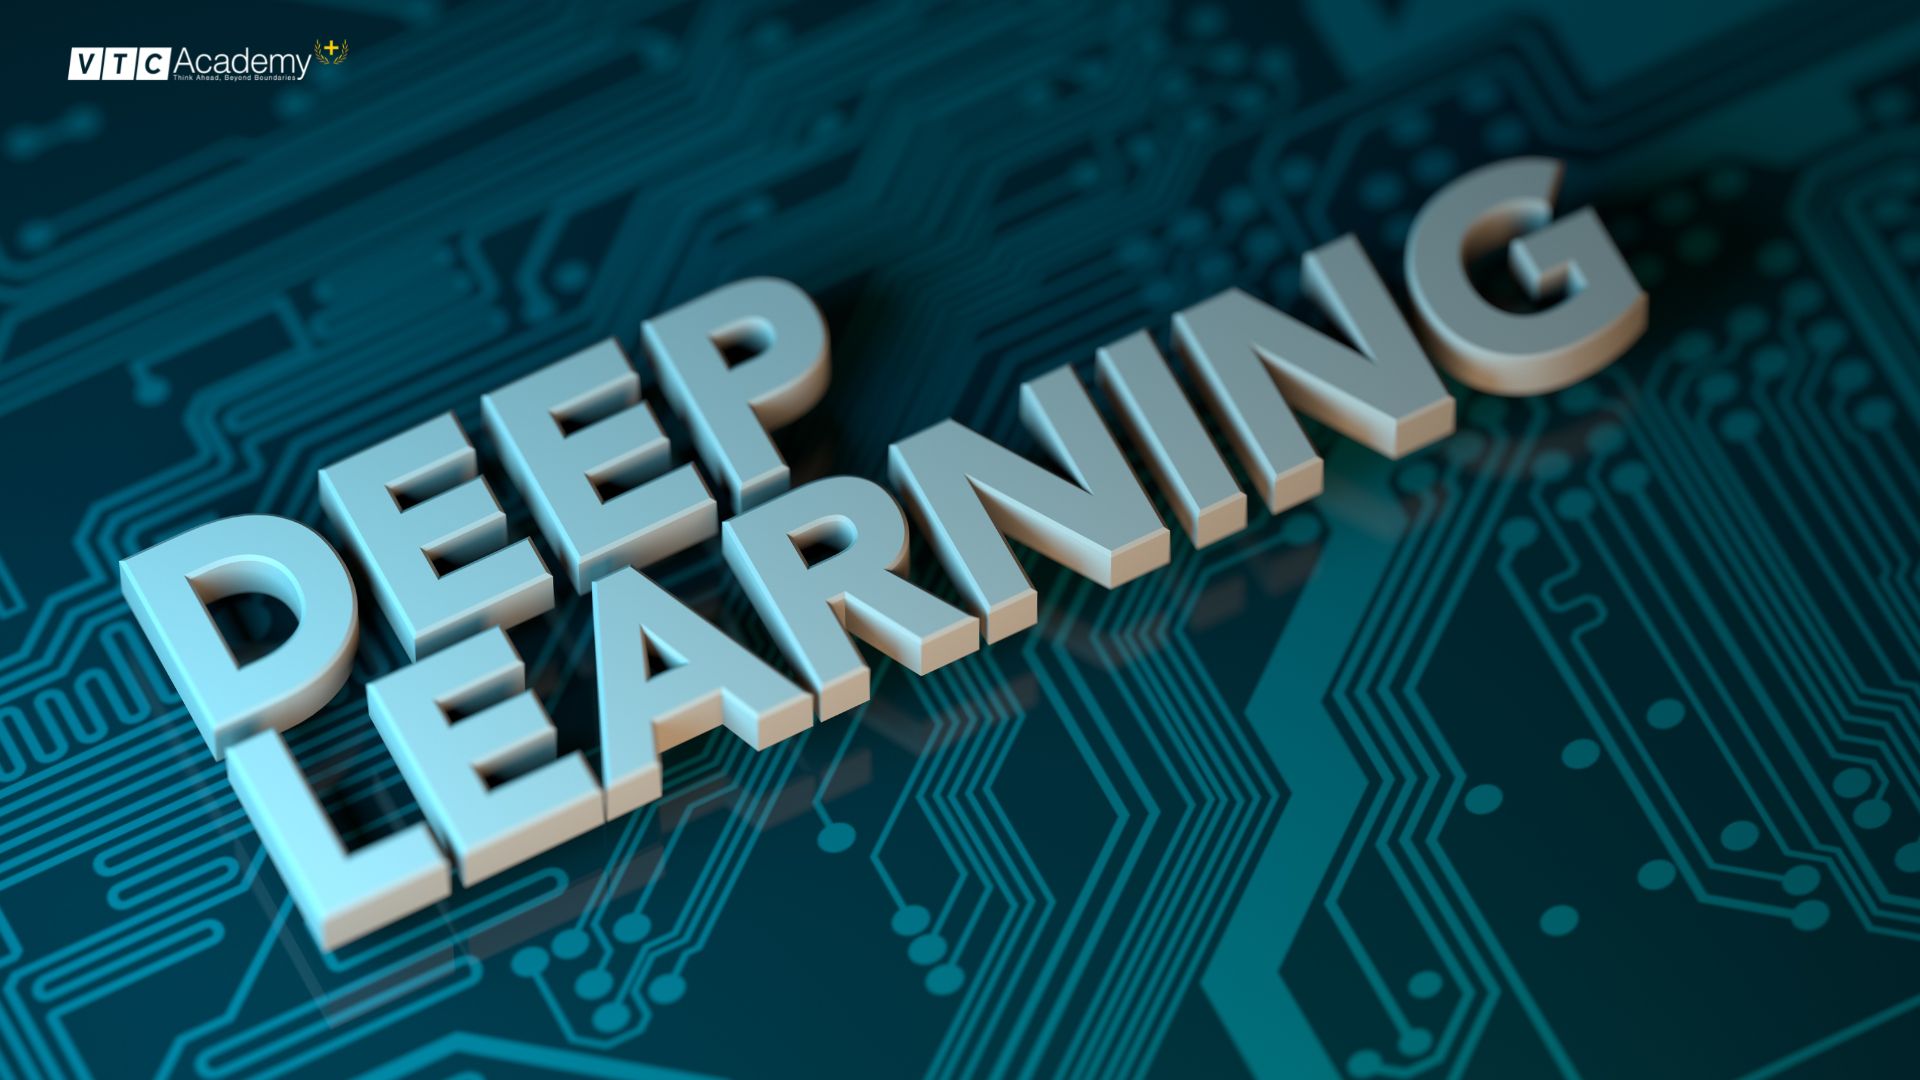 Deep Learning là gì